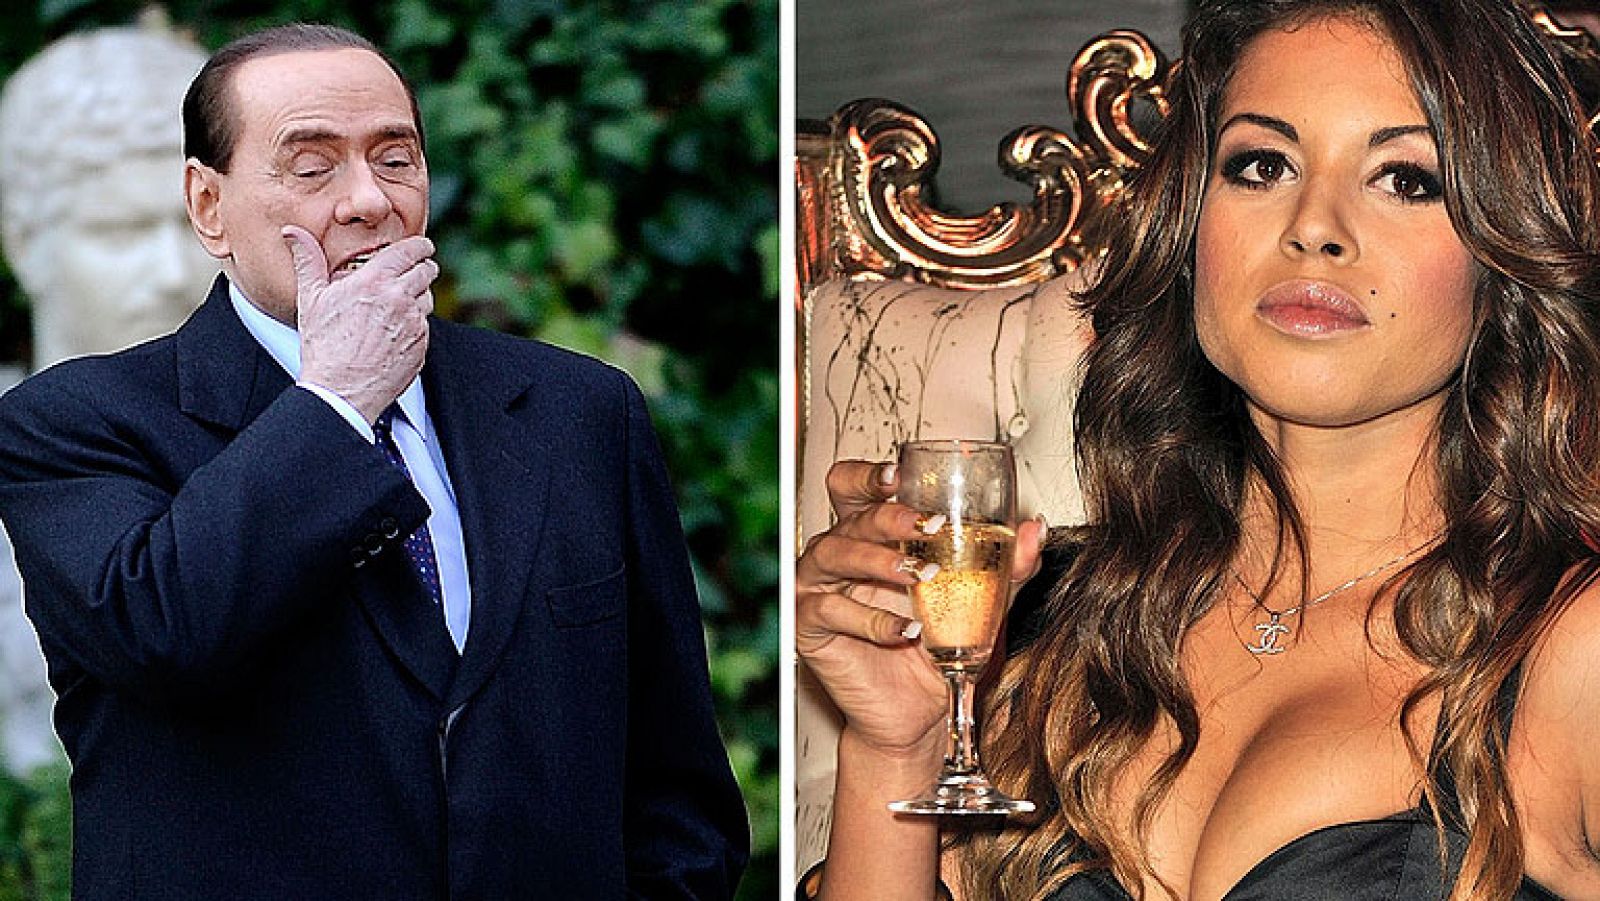  El tribunal de Milán considera probado que el ex primer ministro italiano, Silvio Berlusconi, mantuvo relaciones sexuales con Karima El Mahroug, más conocida como Ruby Robacorazones, cuando era menor de edad a cambio de dinero y regalos.